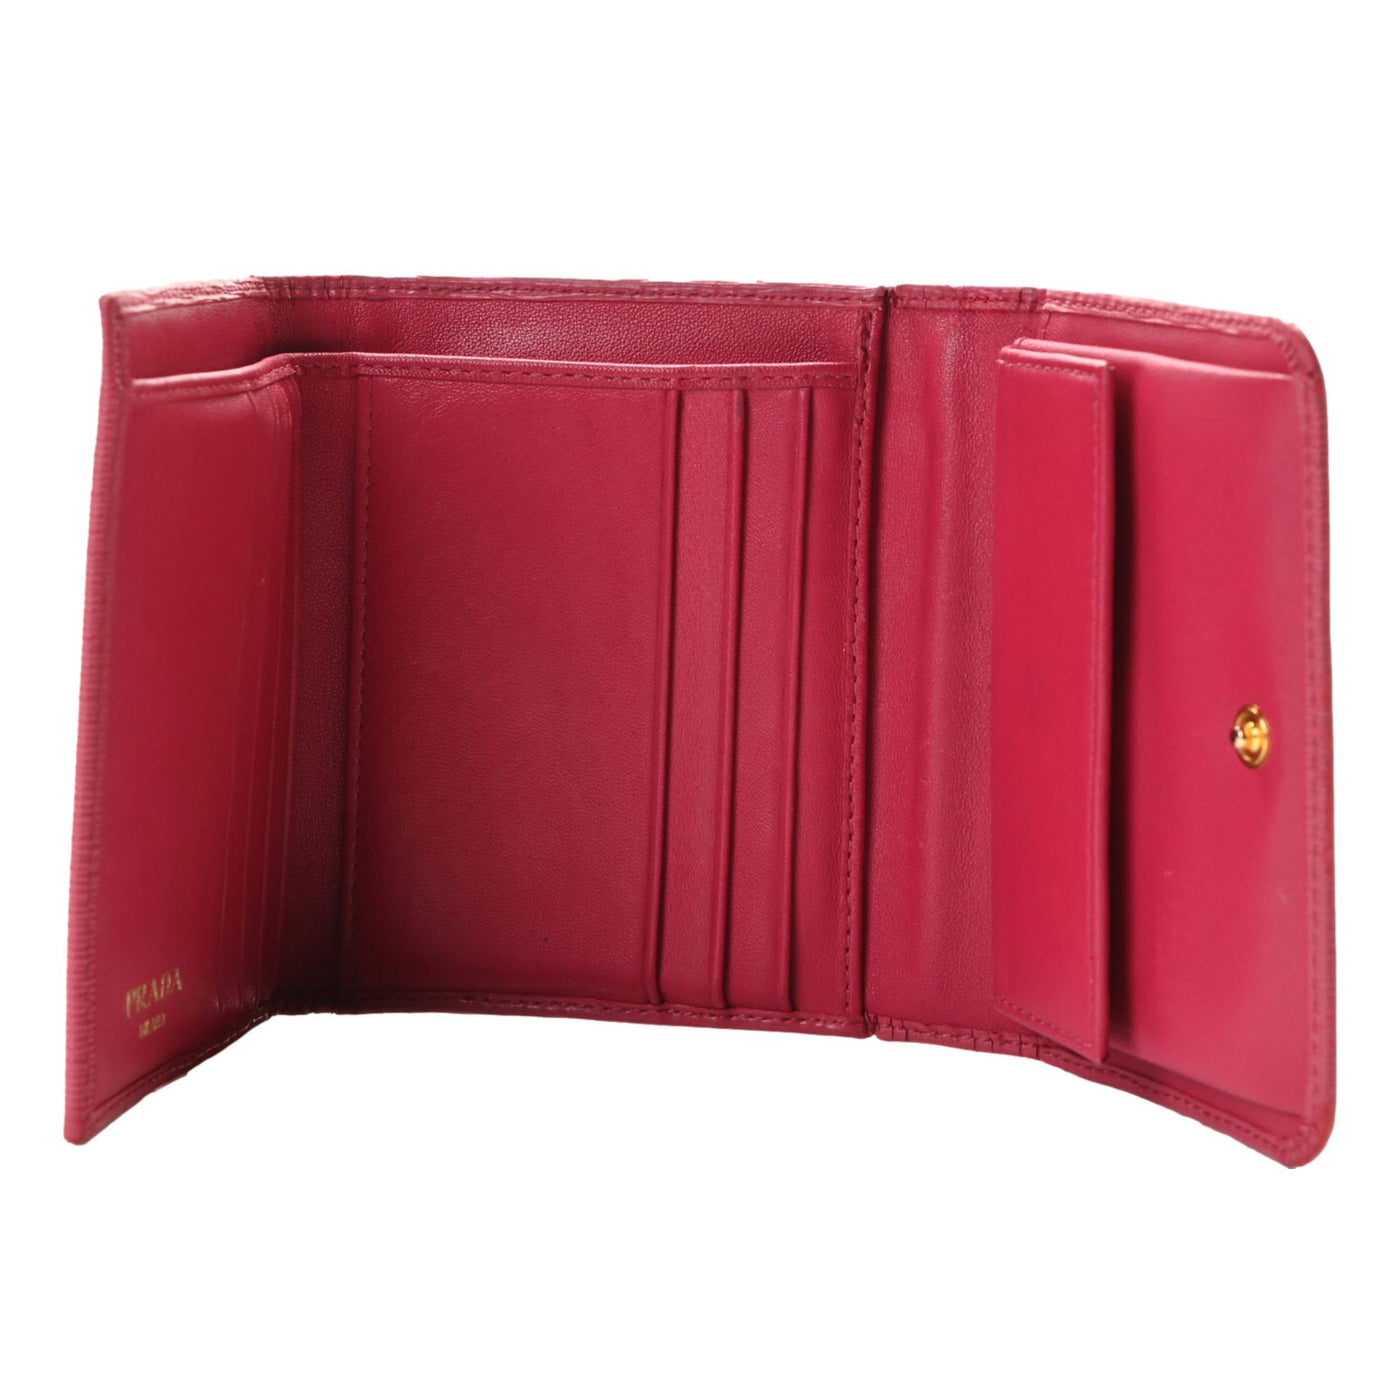 Prada Vitello Move Pink Leather Logo Plaque Small Trifold Wallet - LUXURYMRKT